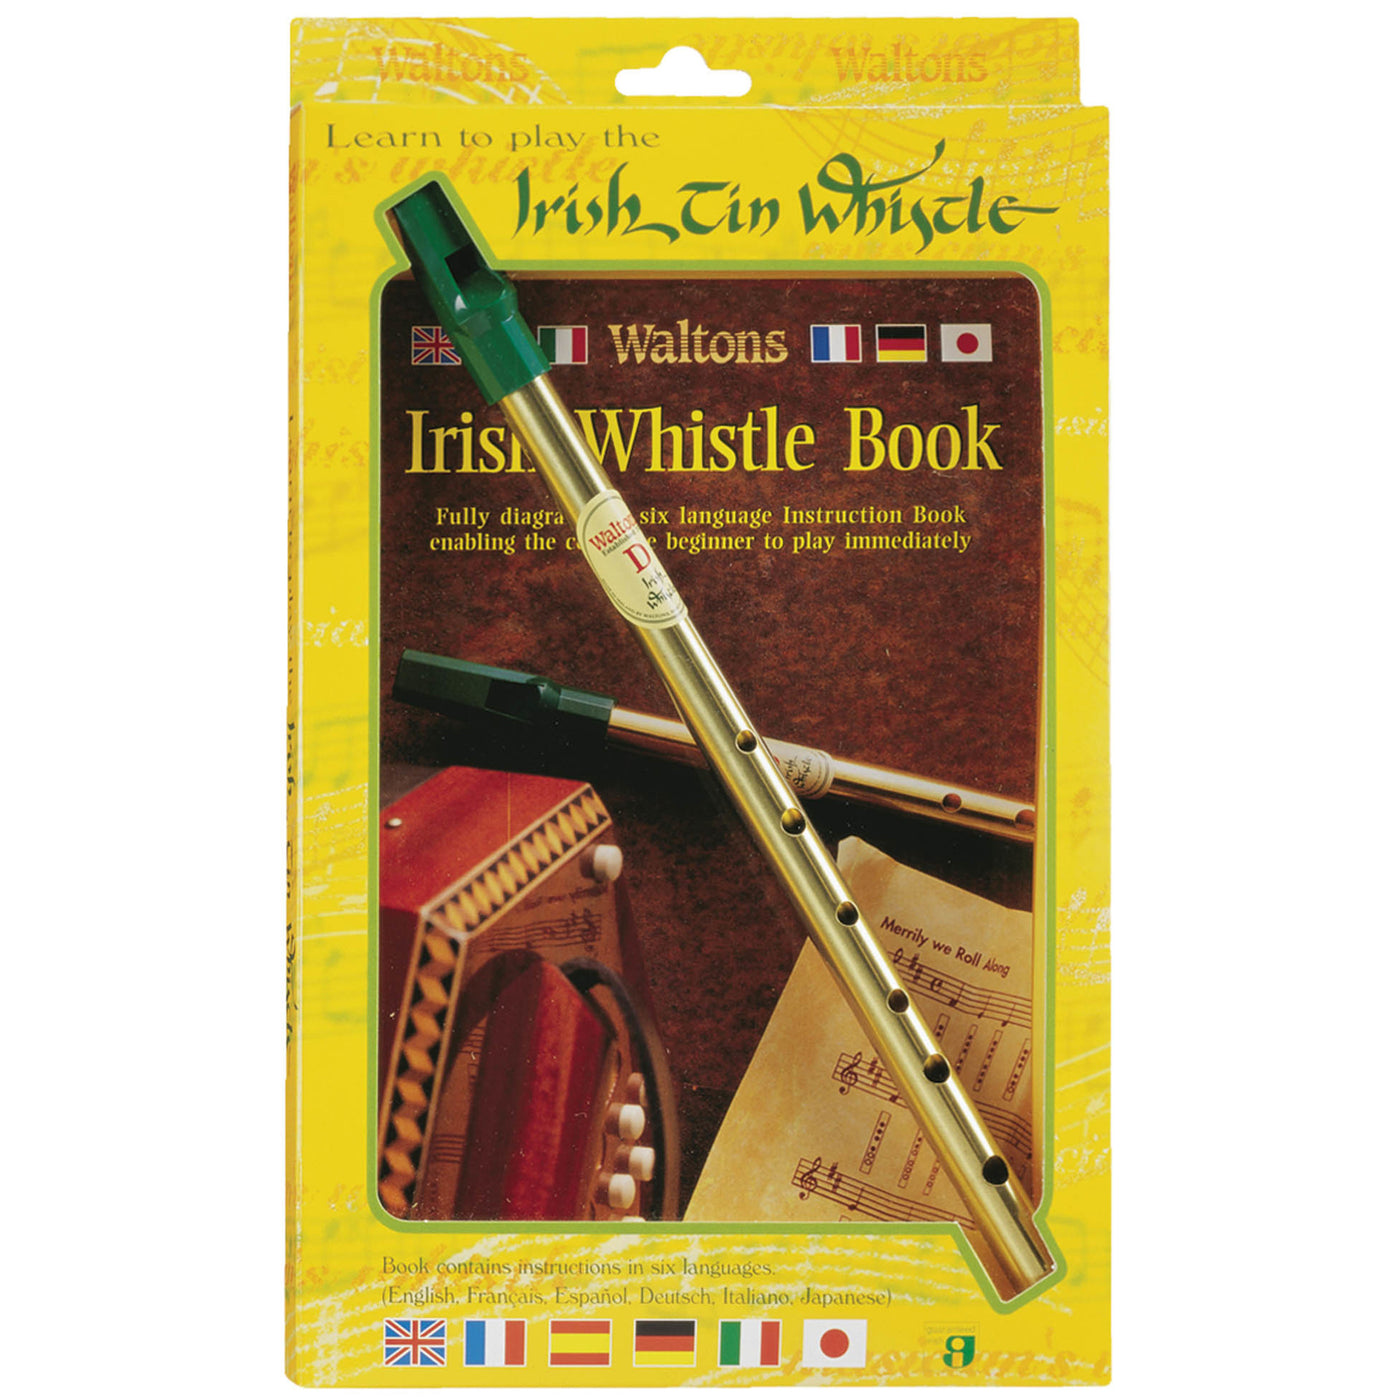 Walton's Irish Music Learn to Play the Irish Tin Whistle (WM1504)